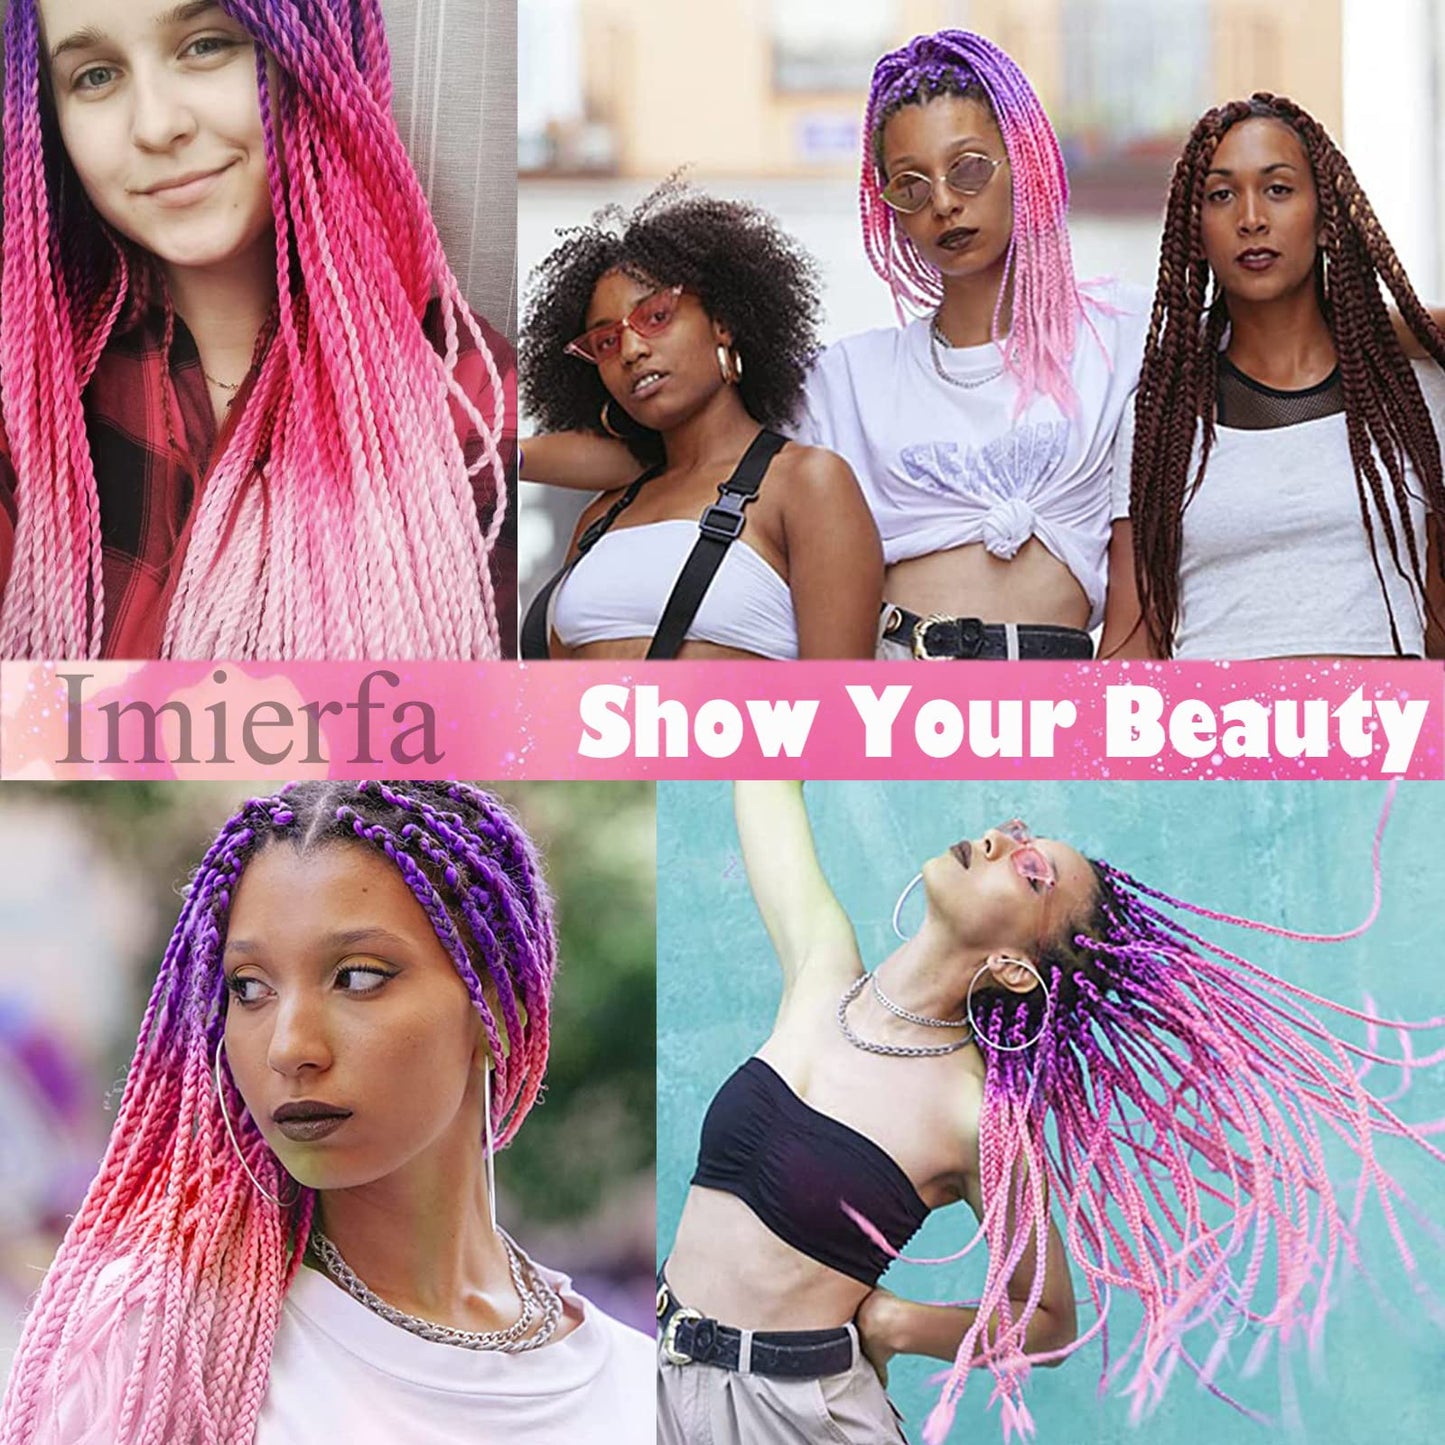 Imierfa Kanekalon Ombre Braiding Hair, 3Tone Braiding Hair Extensions Feed in Hair for Braids, 3Pack Kanekalon Braiding Hair for Twist Braids Color Purple Peach Red Pink 24" 3PCS